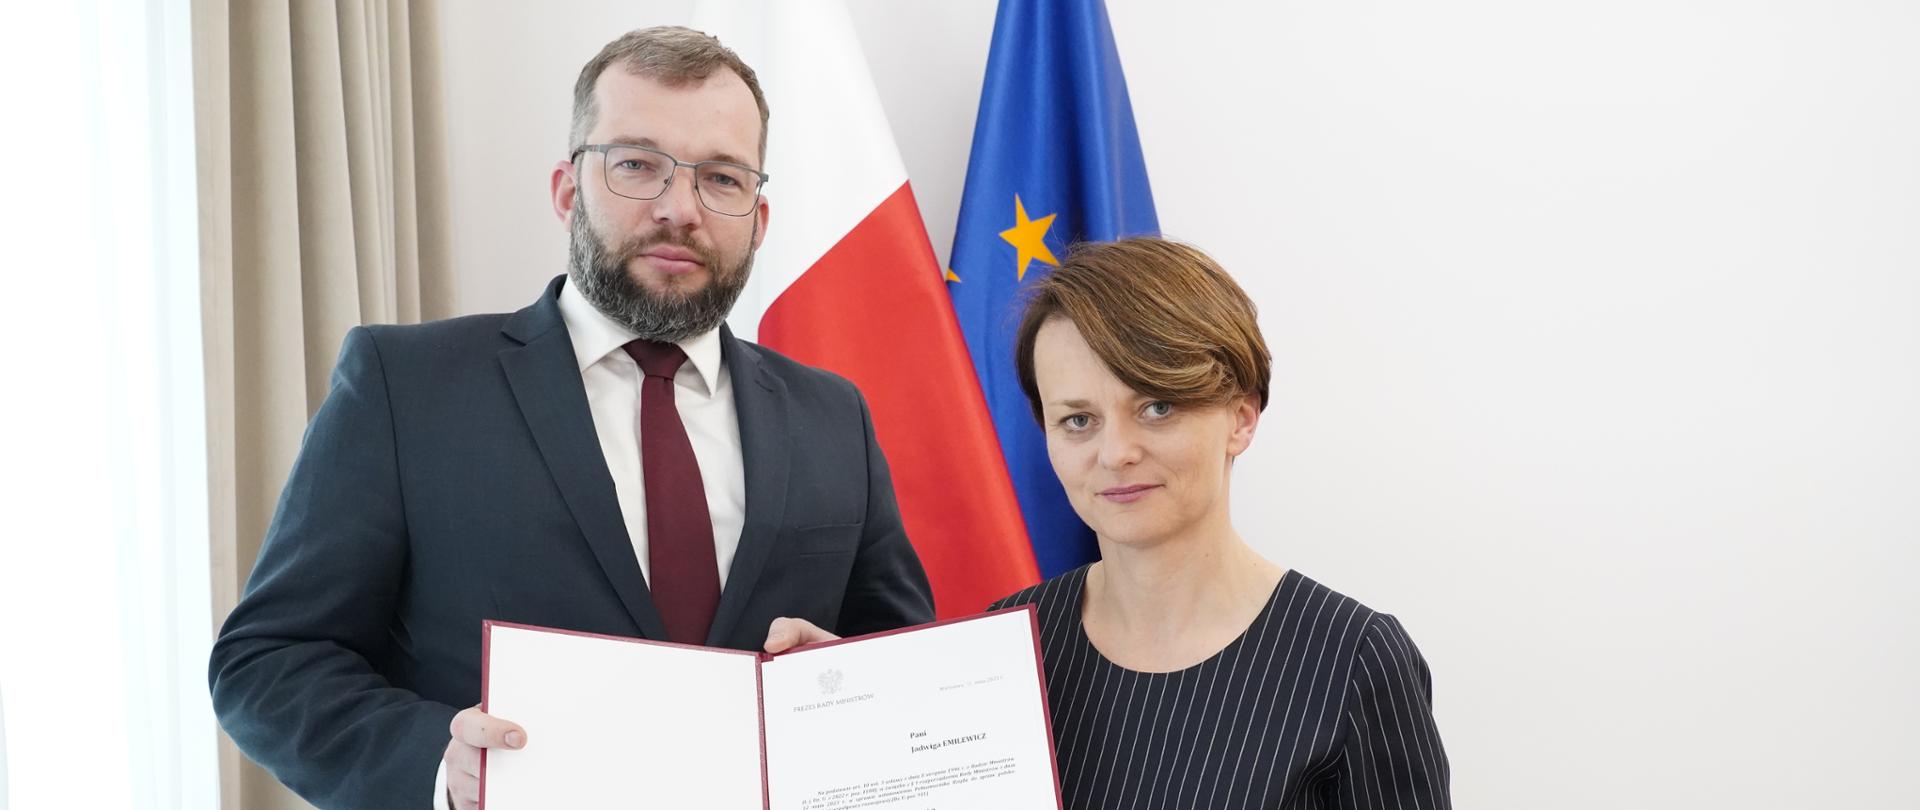 Minister Grzegorz Puda i wiceminister Jadwiga Emilewicz trzymają w rękach akt powołania - dokument w bordowej teczce. W tle flagi Polski i Unii Europejskiej.